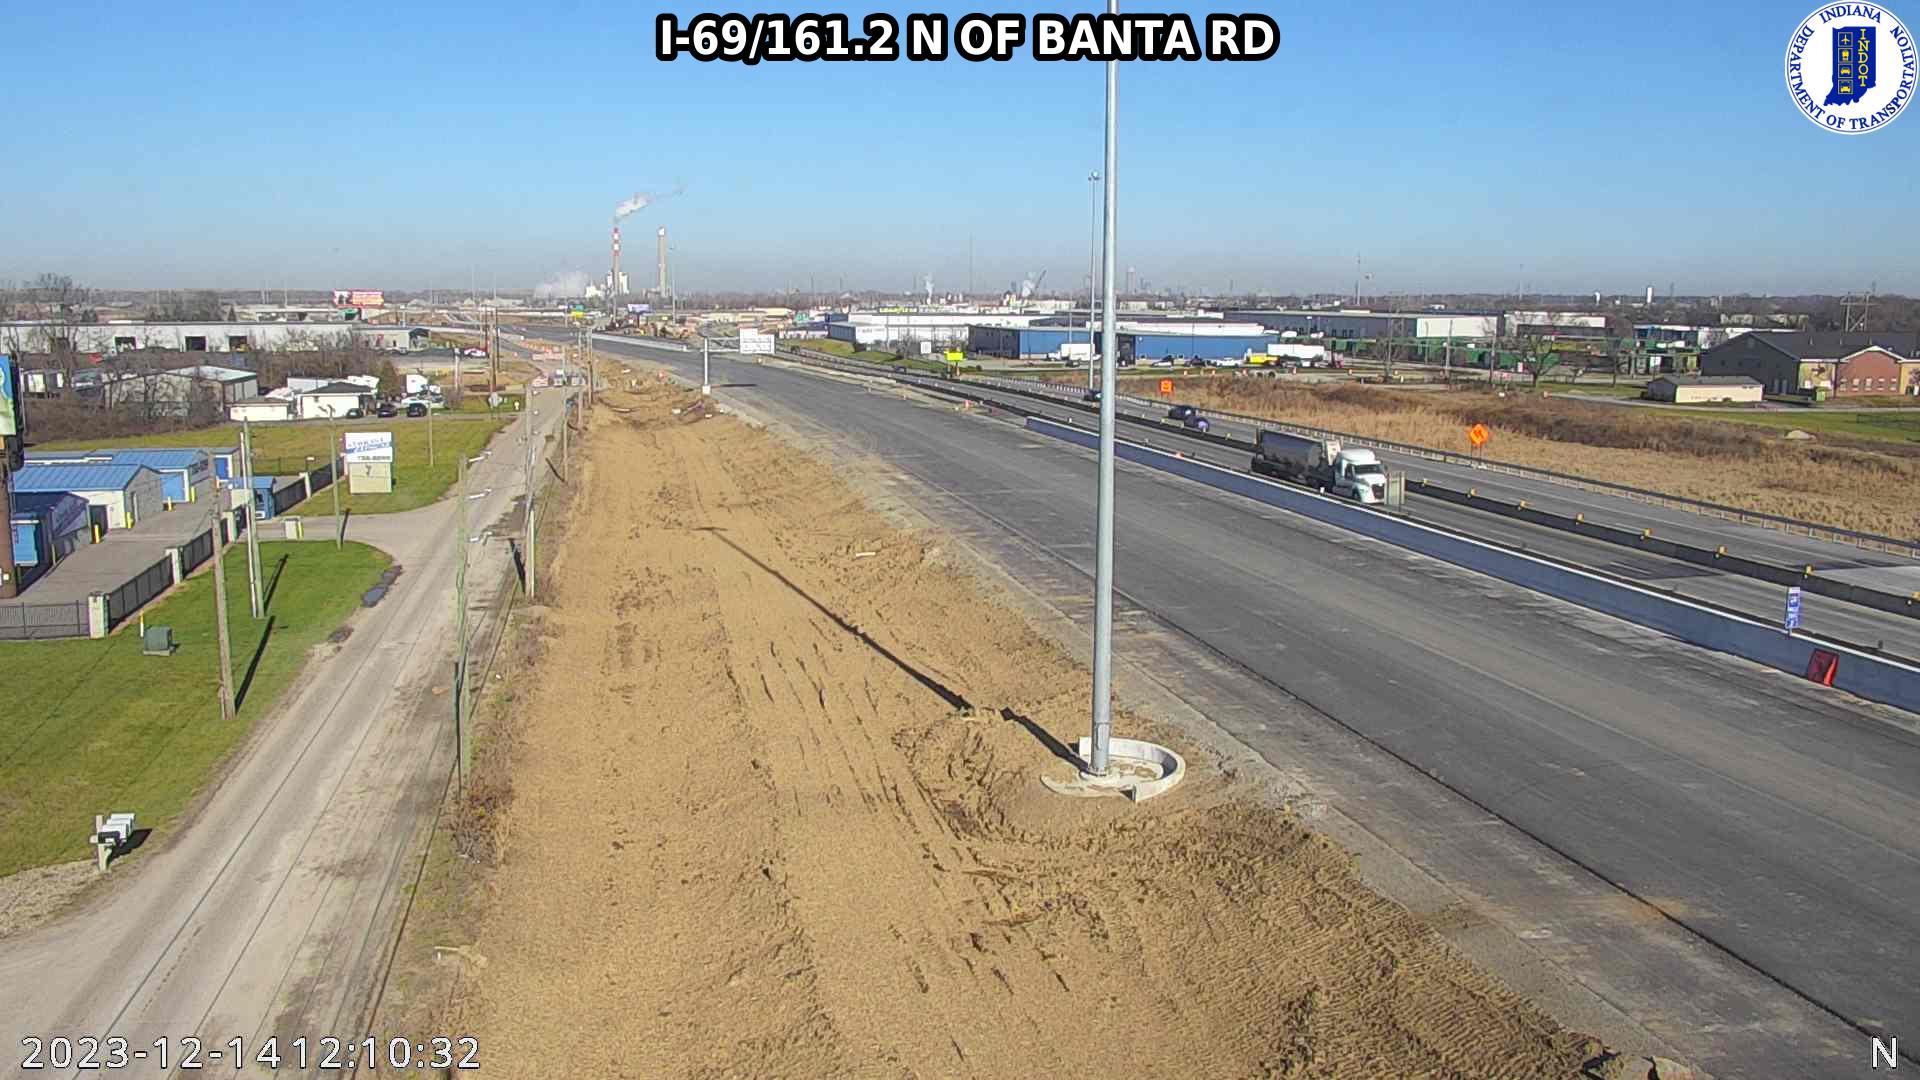 Traffic Cam Indianapolis: I-69: I-69/161.2 N OF BANTA RD: I-69/161.2 N OF BANTA RD Player